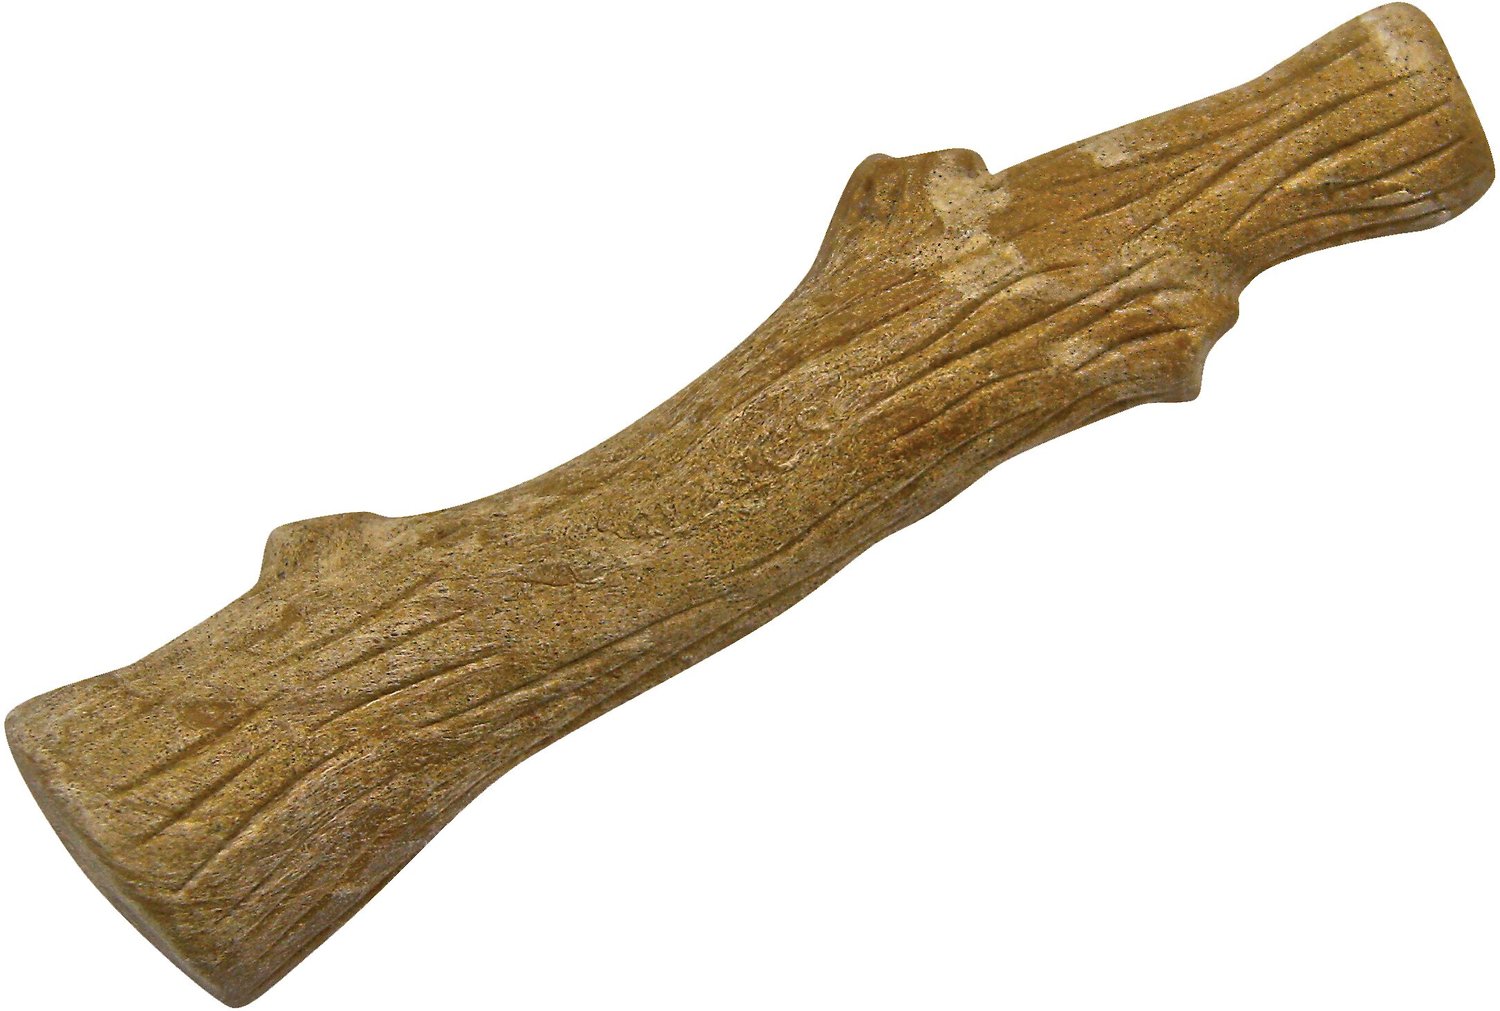 dogwood stick